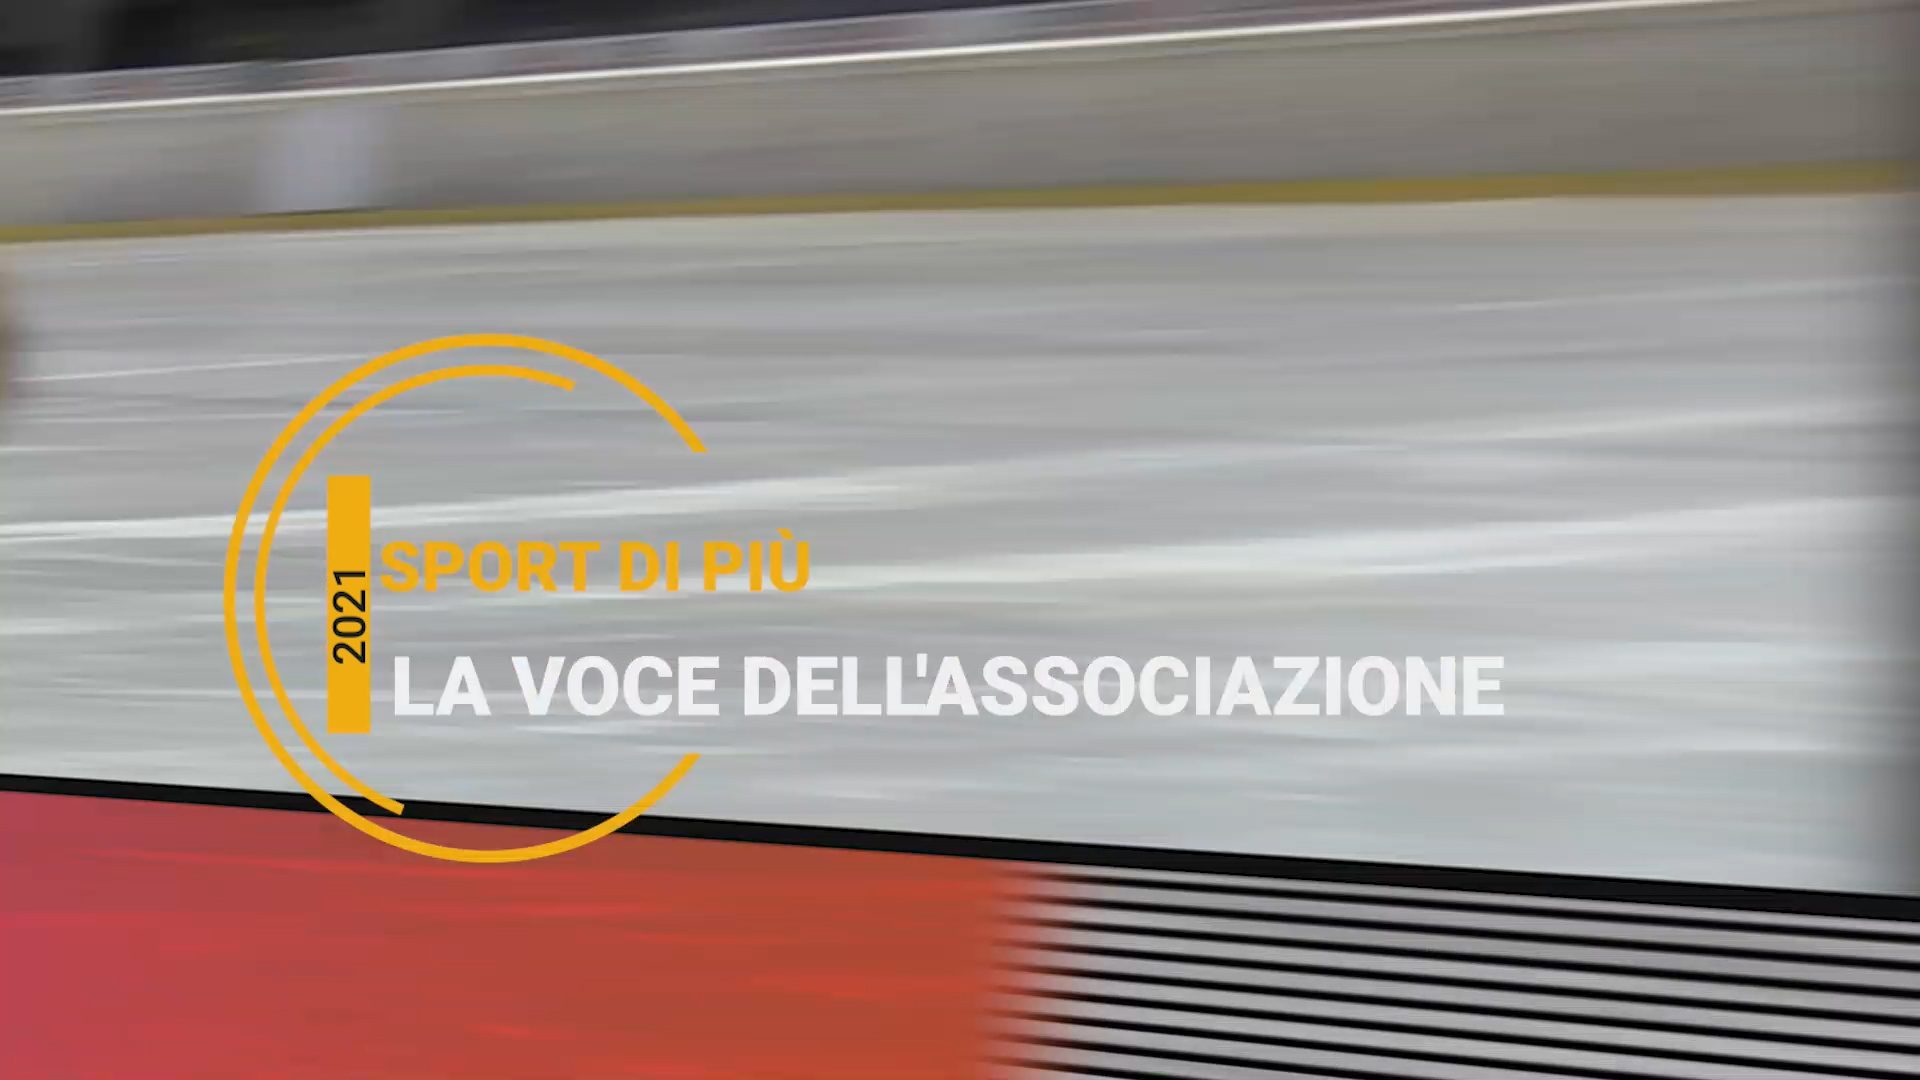 Featured image for “La Voce dell’Associazione: Sportdipiù protagonista”